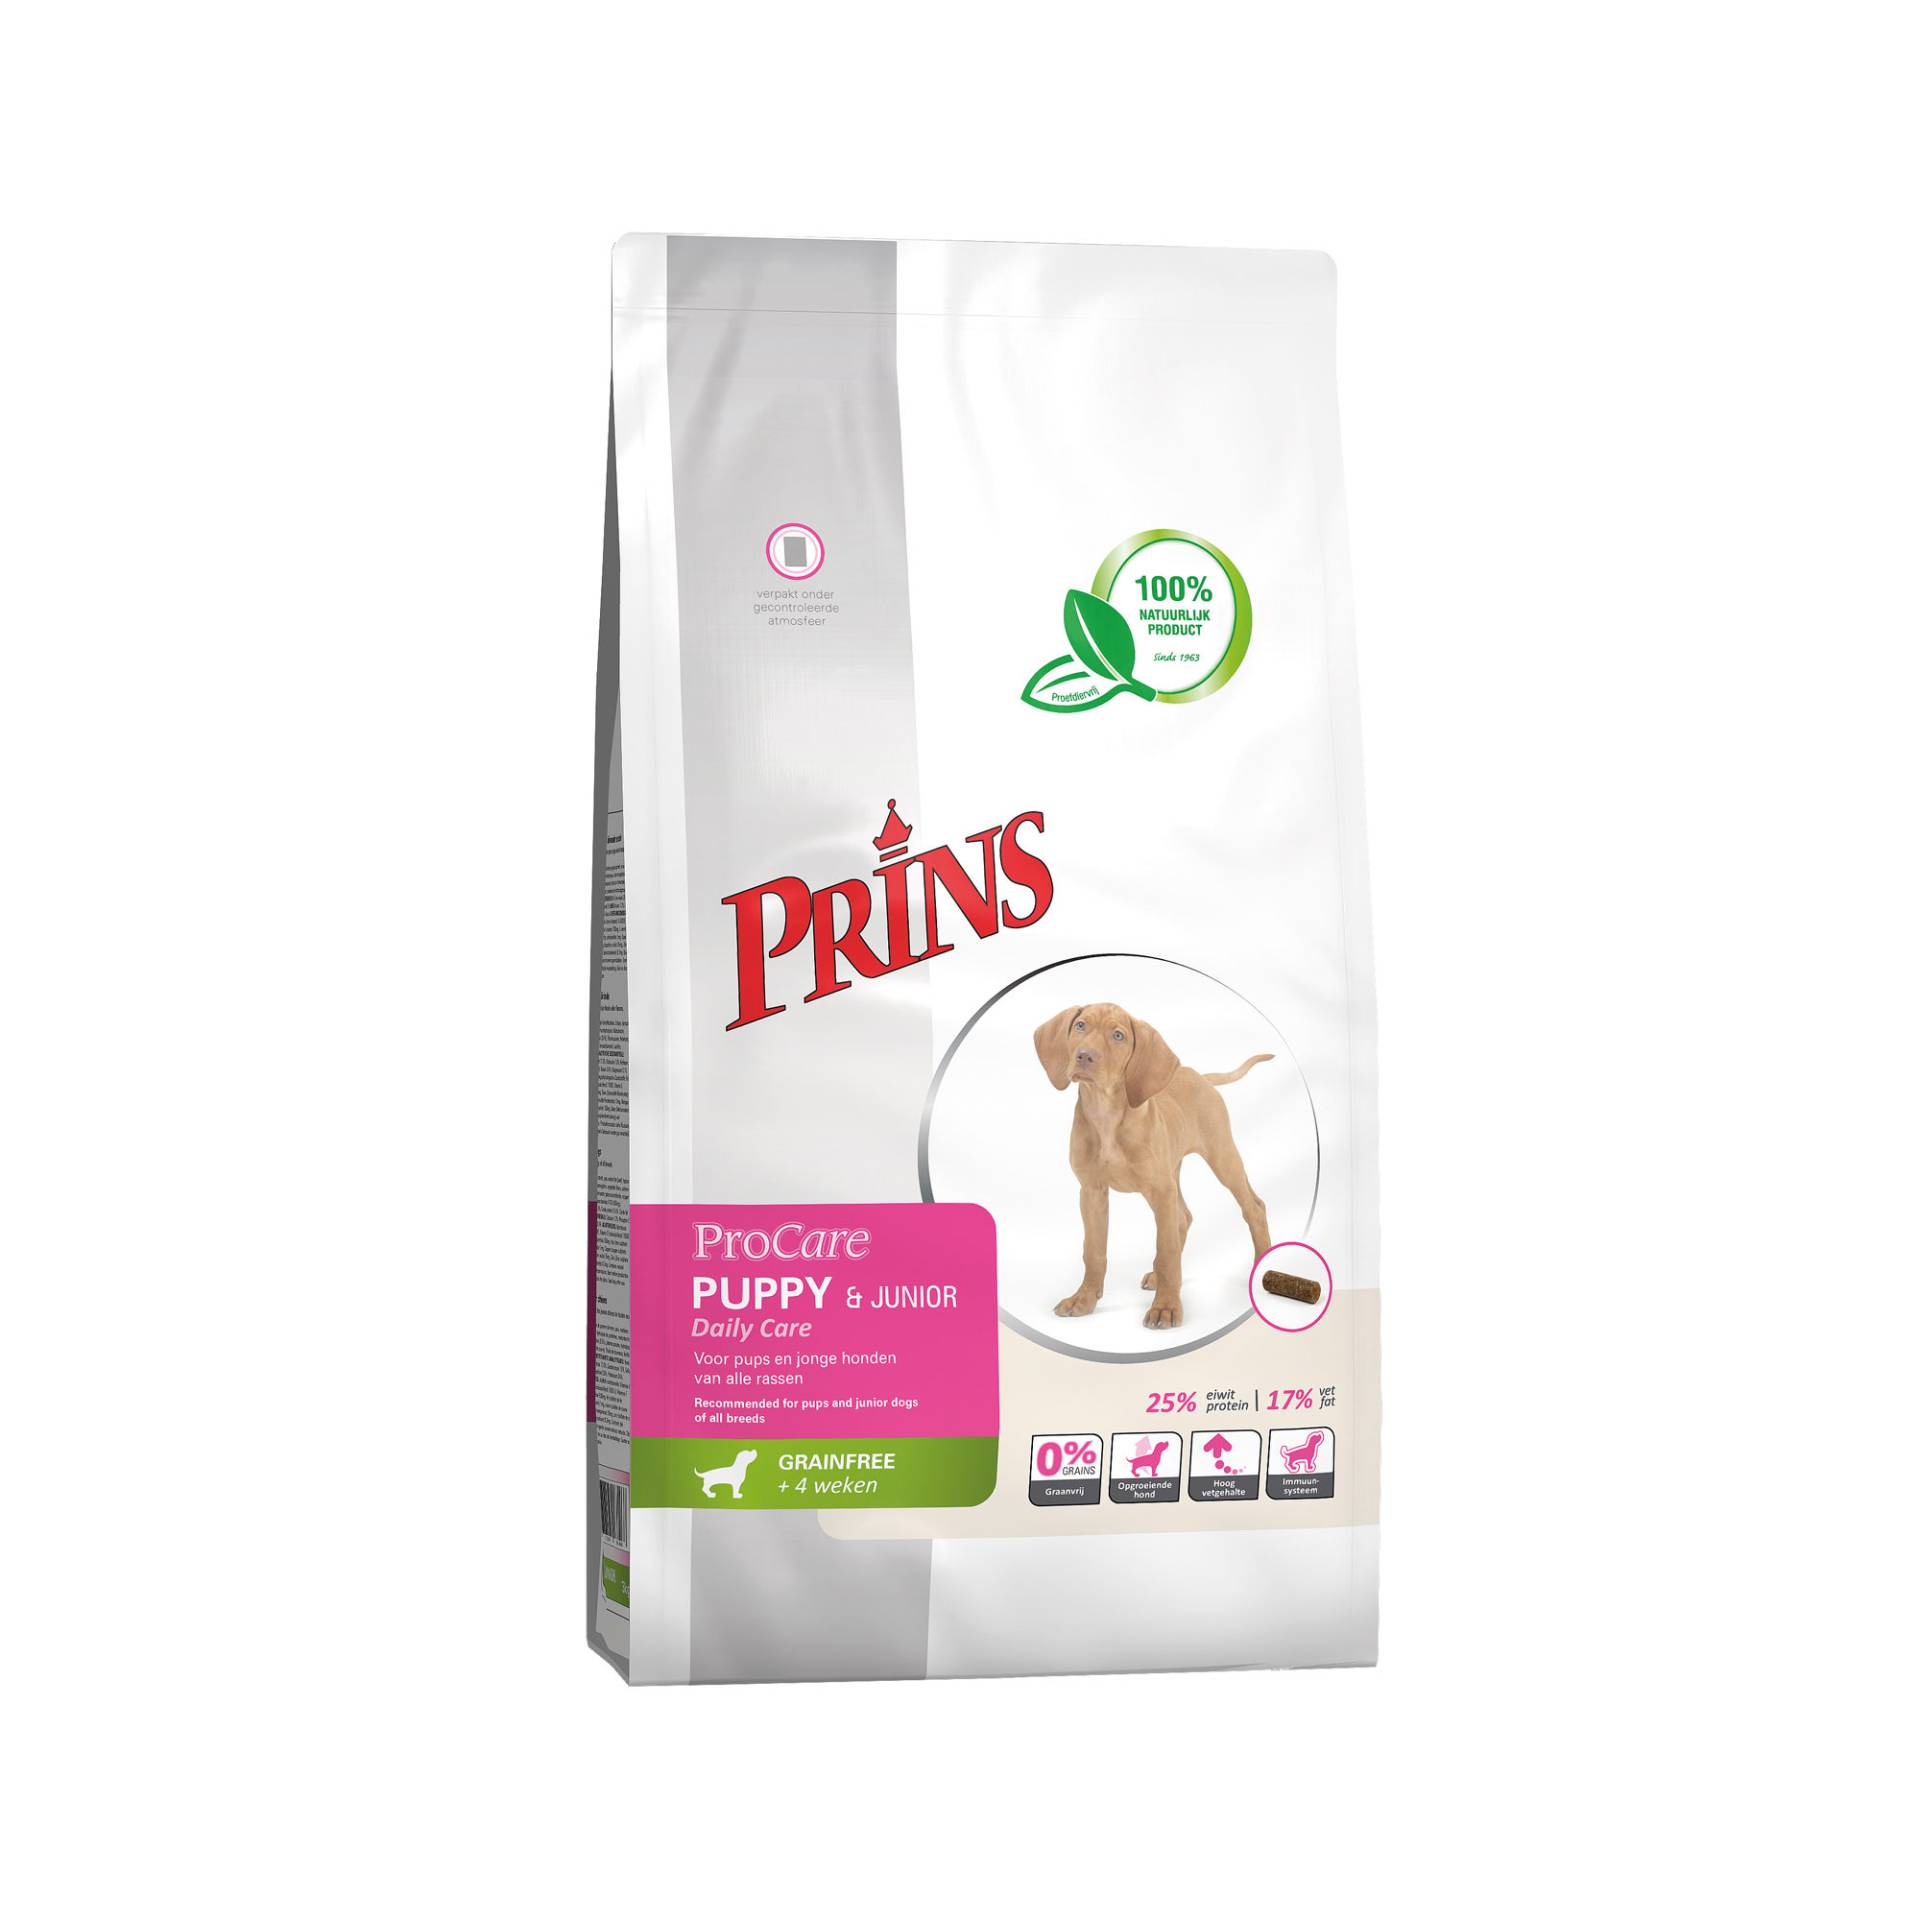 Prins ProCare Grainfree Puppy & Junior Daily Care - 3 kg von Prins